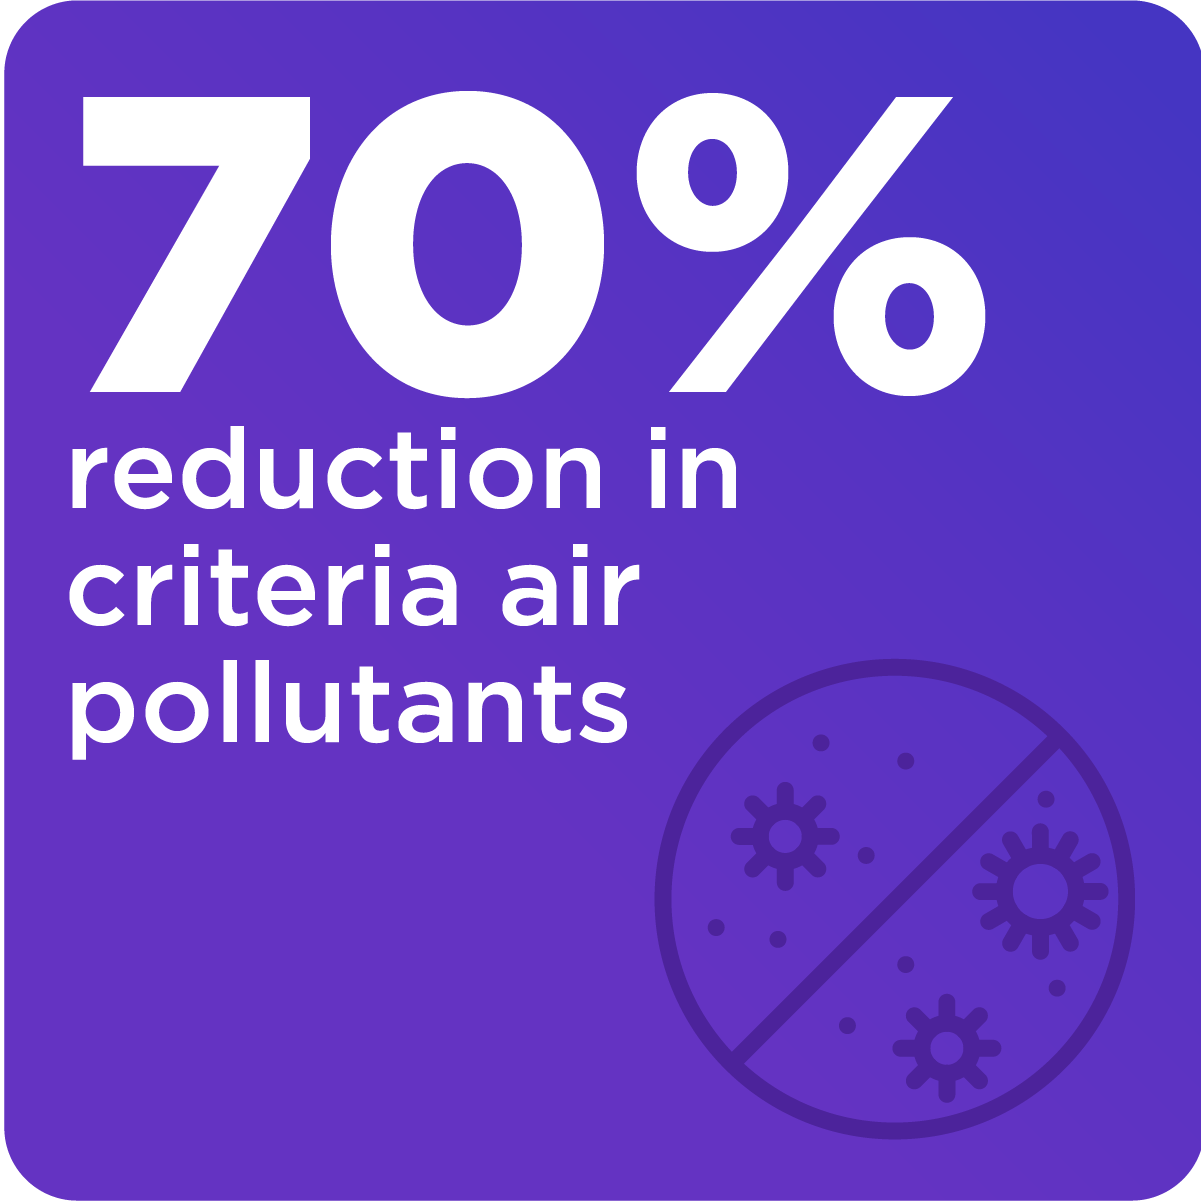 70% reduction in criteria air pollutant emissions